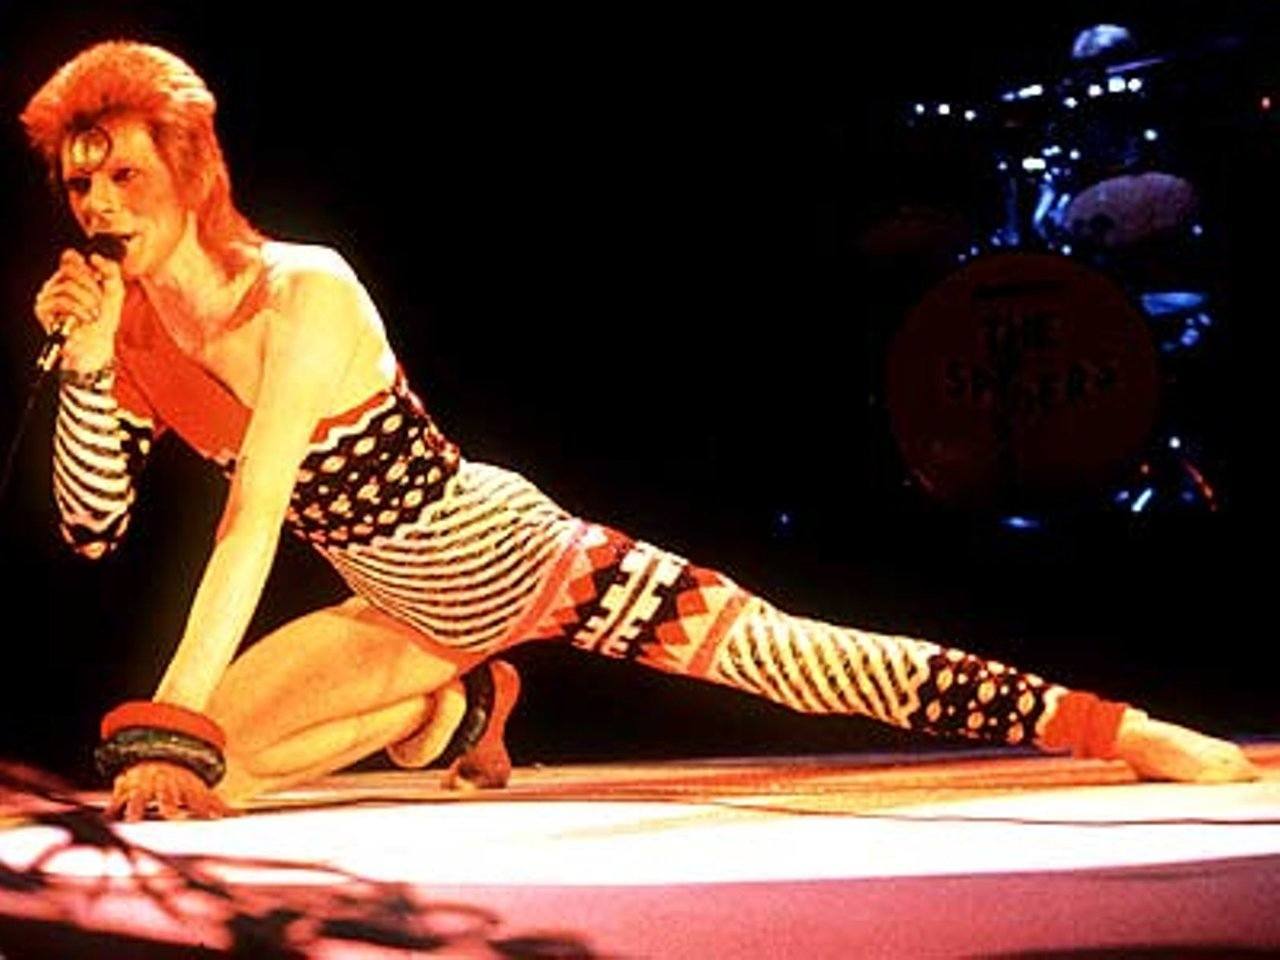 David Bowie - KANSAI YAMAMOTO FEATURE IN VICE MAGAZINE “Fa-fa-fa